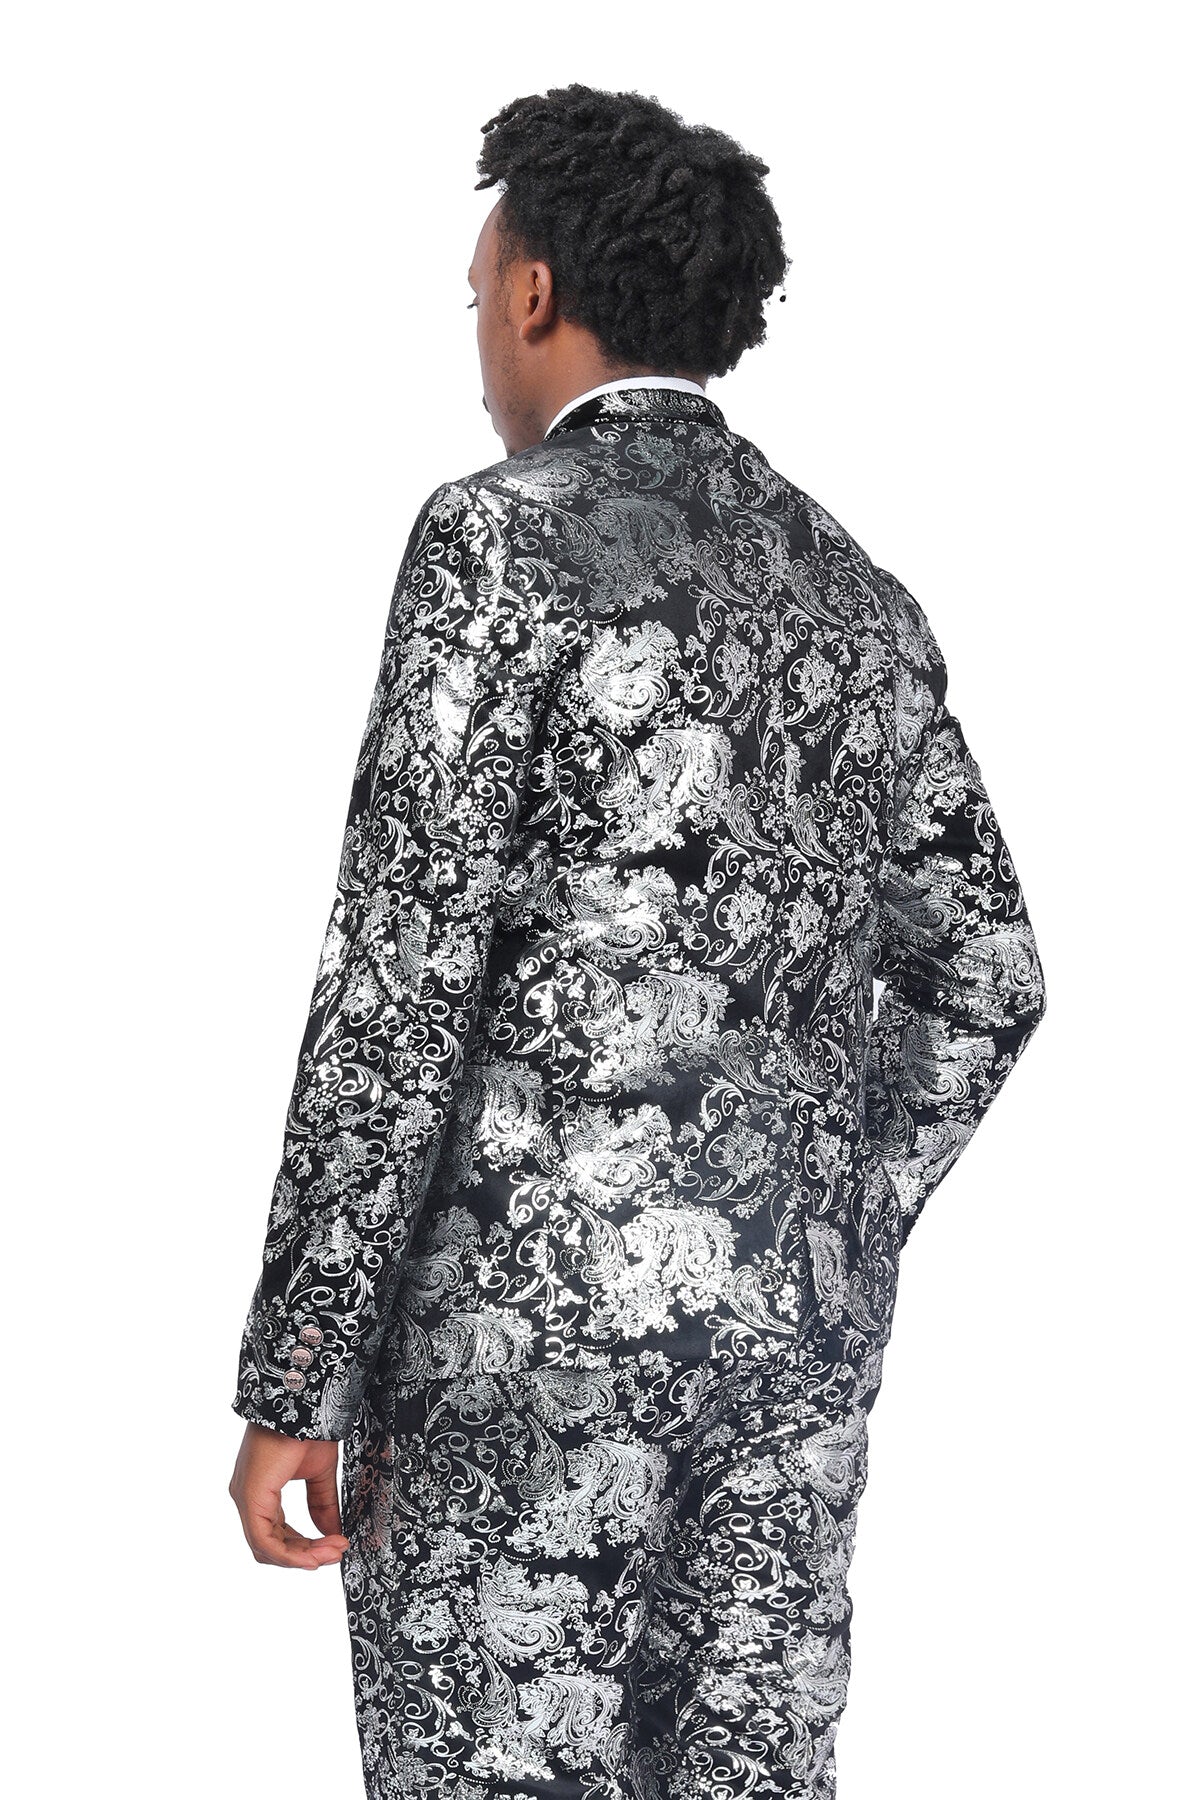 2-Piece Slim Fit Stylish Dress Floral Suit Silver